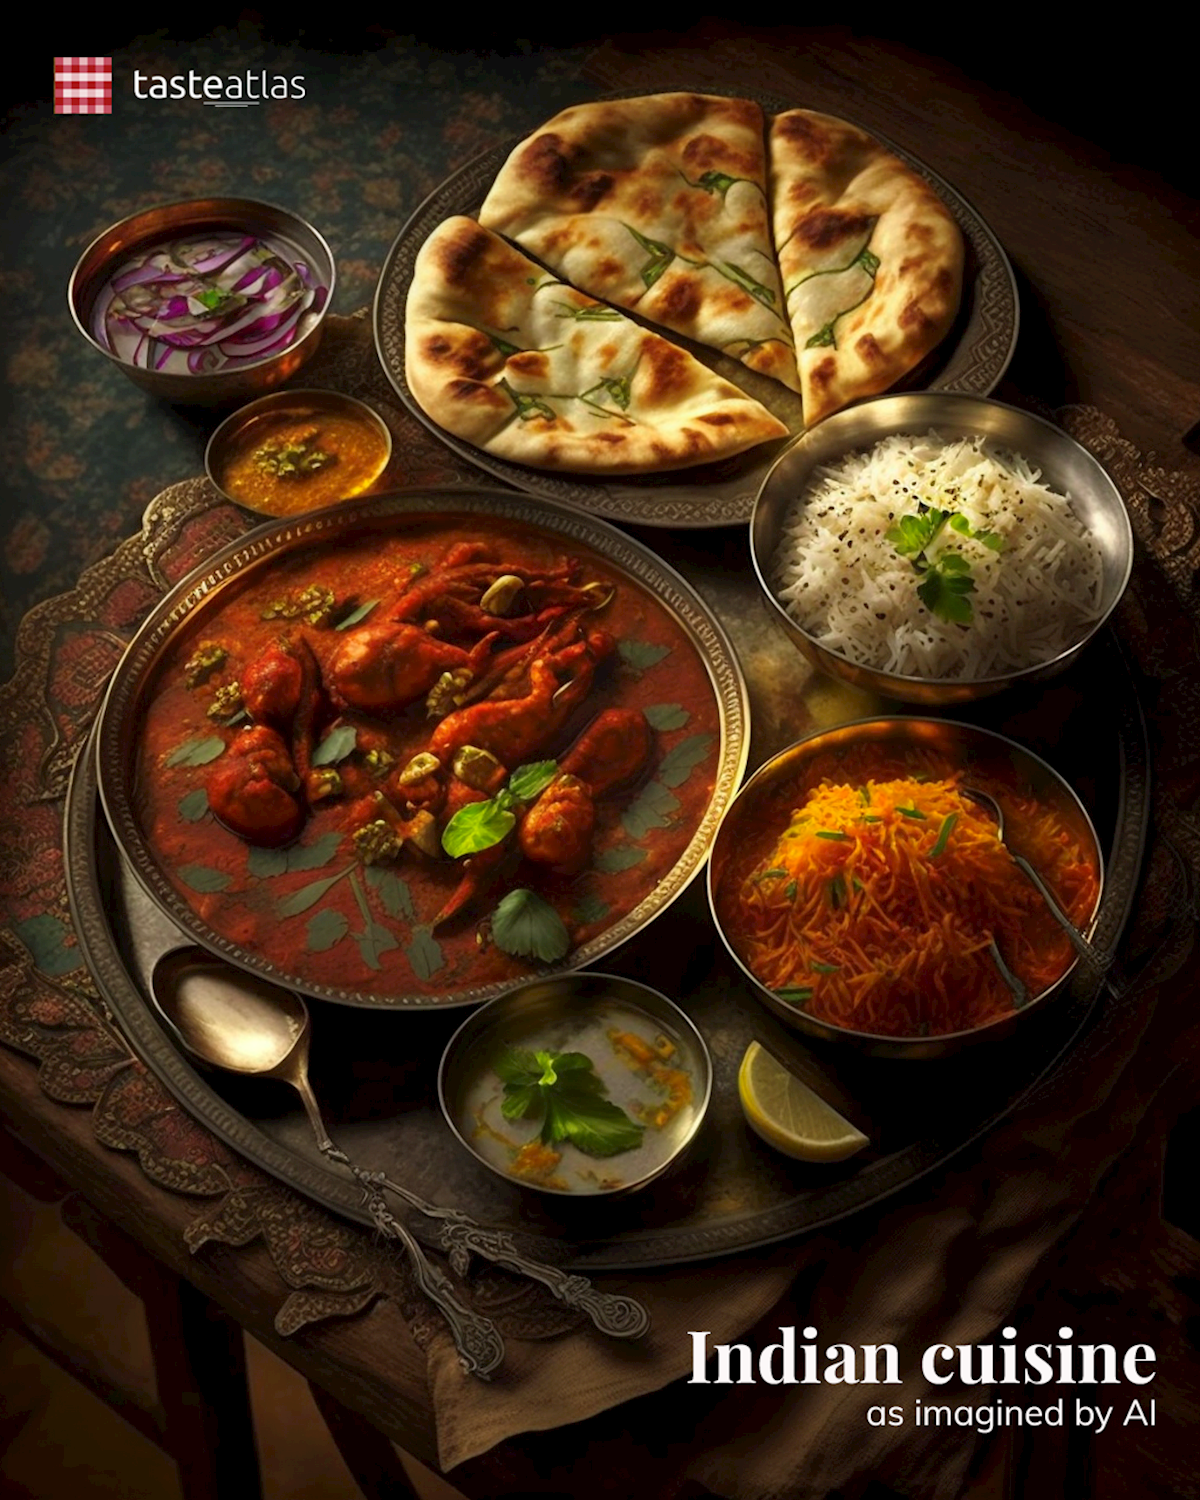 Prompt: Imagine Indian cuisine